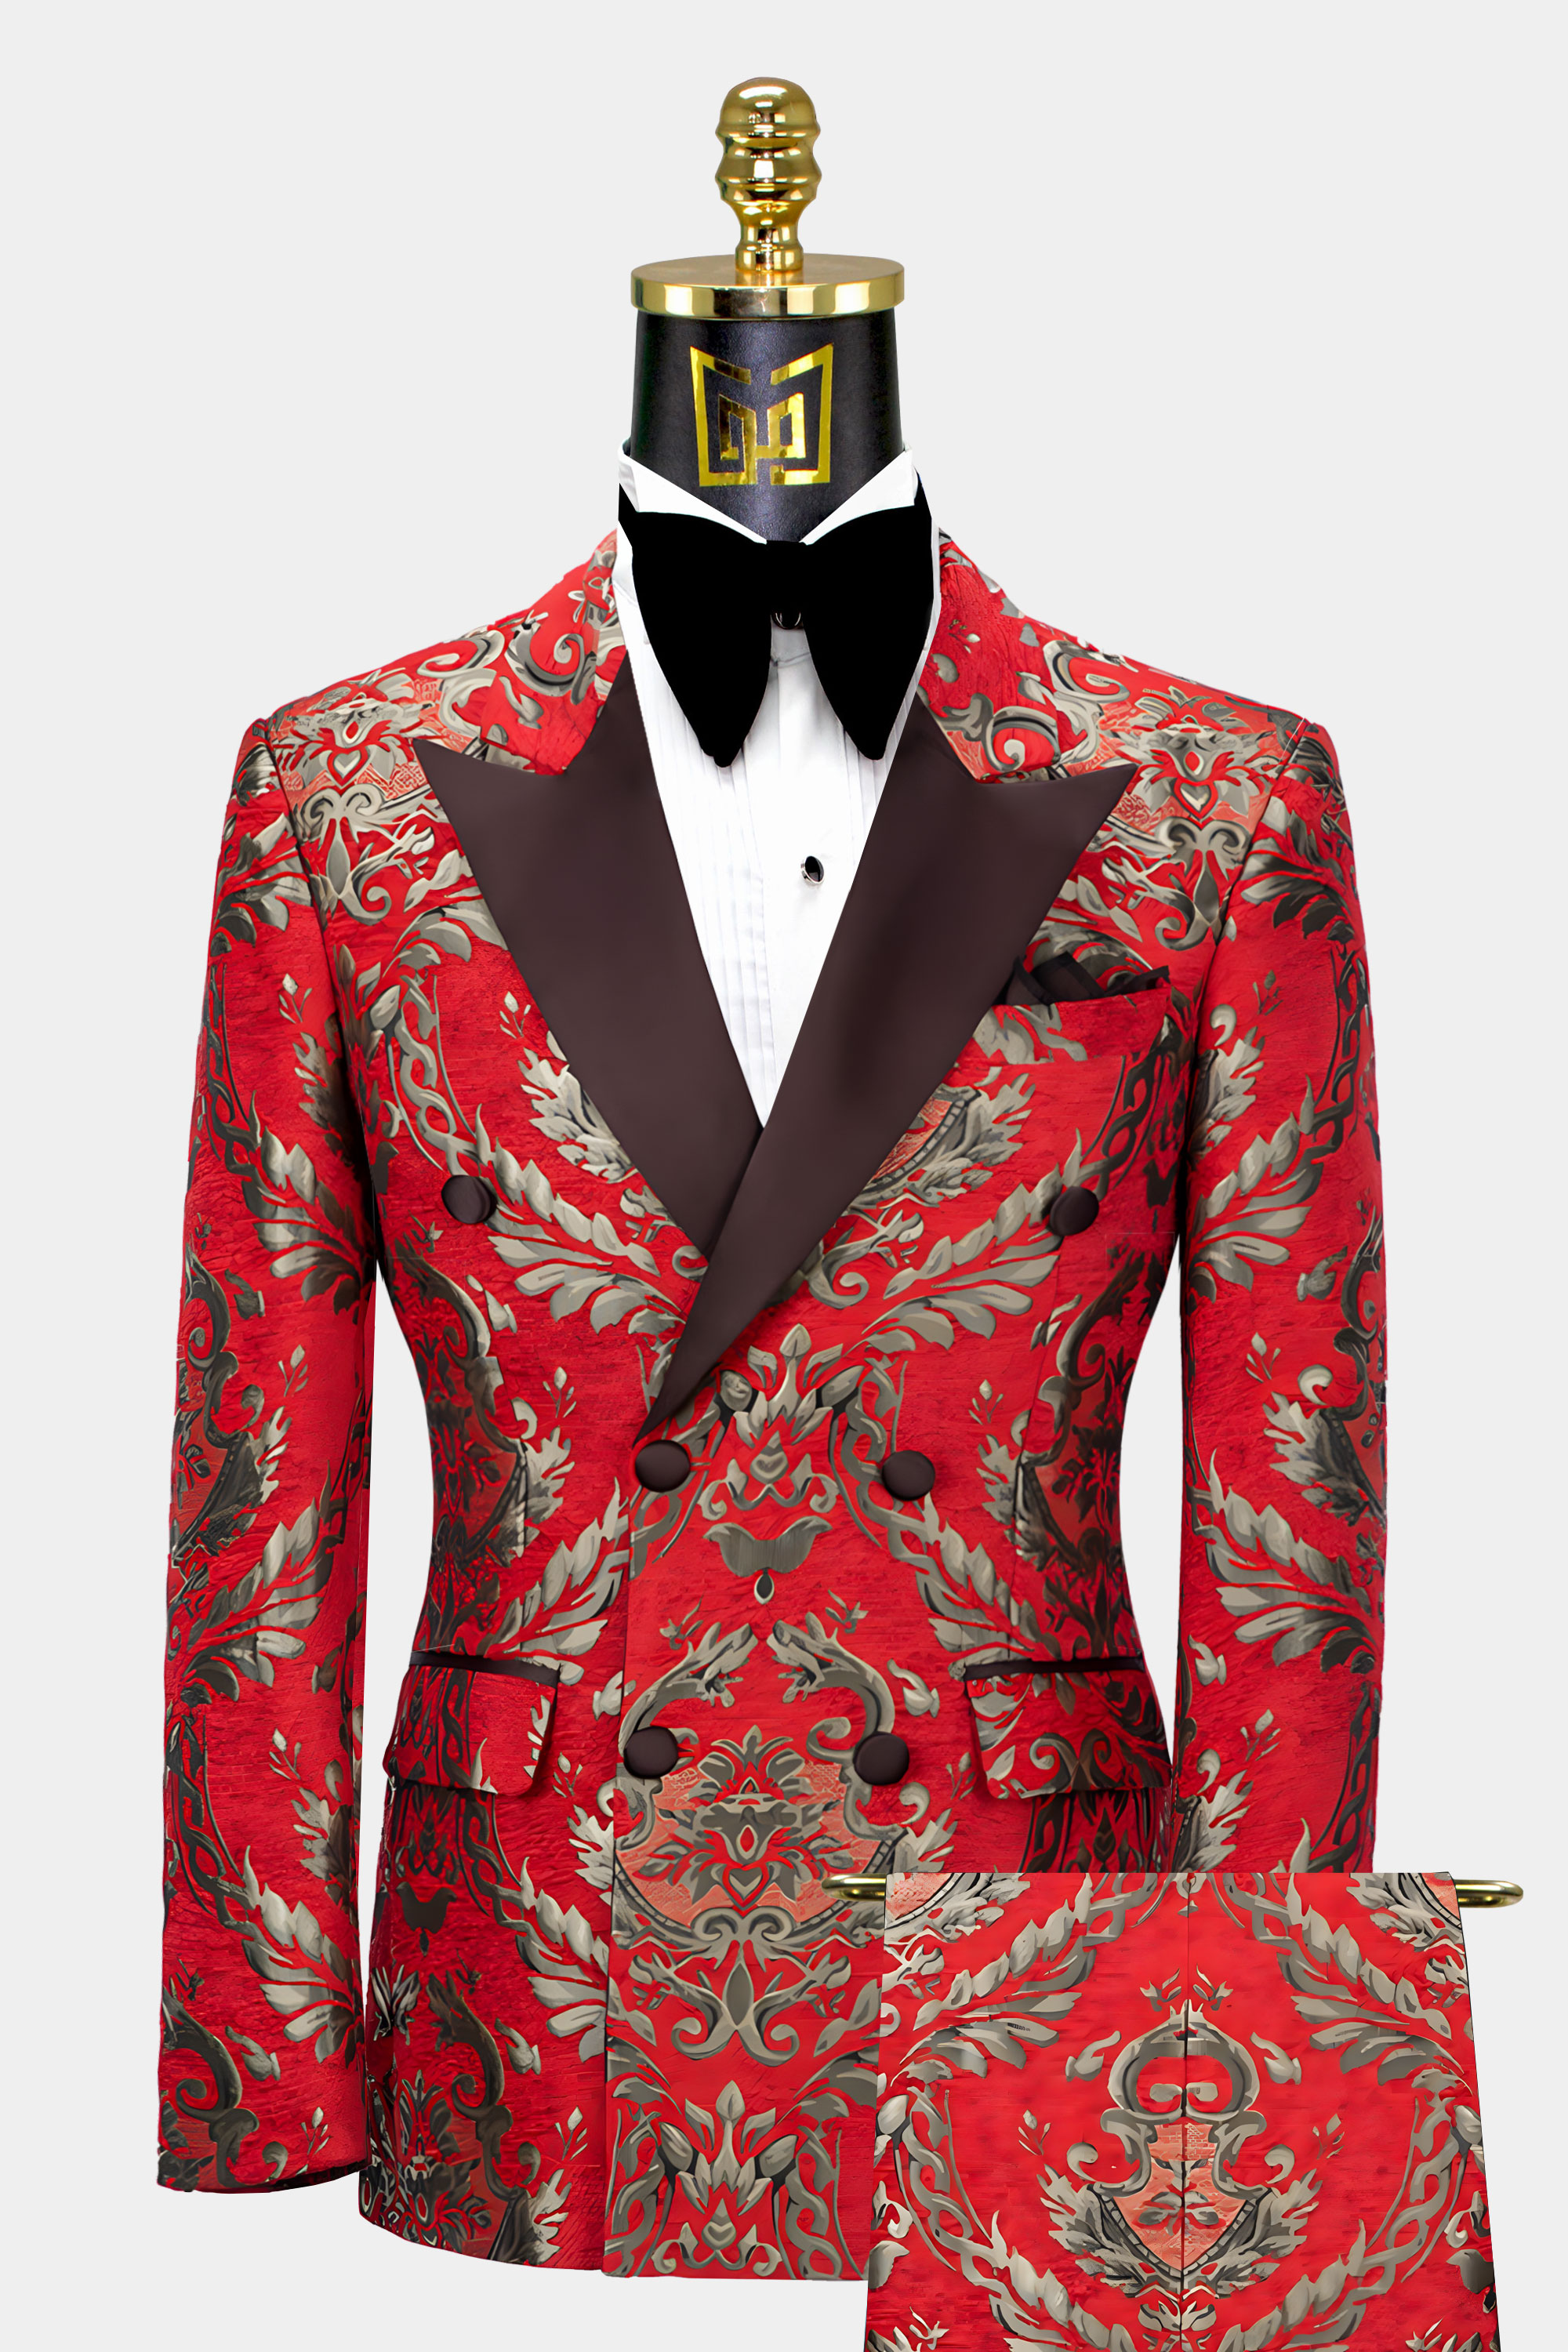 Gold-and-Red-Tuxedo-Groom-Wedding-Prom-Suit-from-Gentlemansguru.com